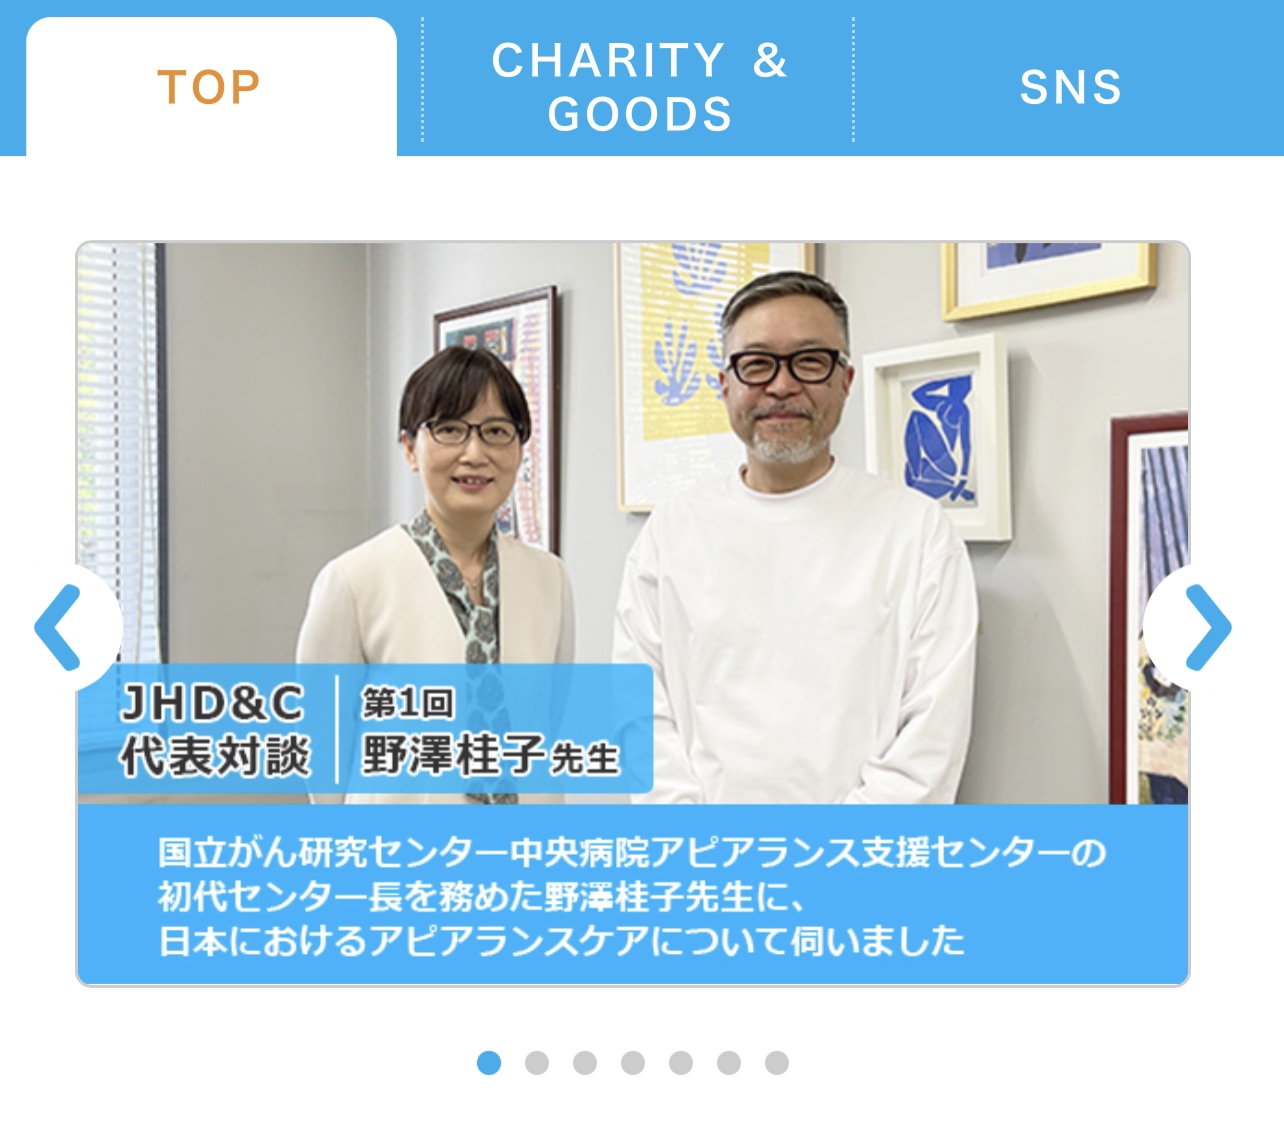 【お知らせ】JHD&C代表対談 第1回 野澤桂子先生<日本におけるアピアランスケアと理美容の役割>のページを公開しましたの画像1